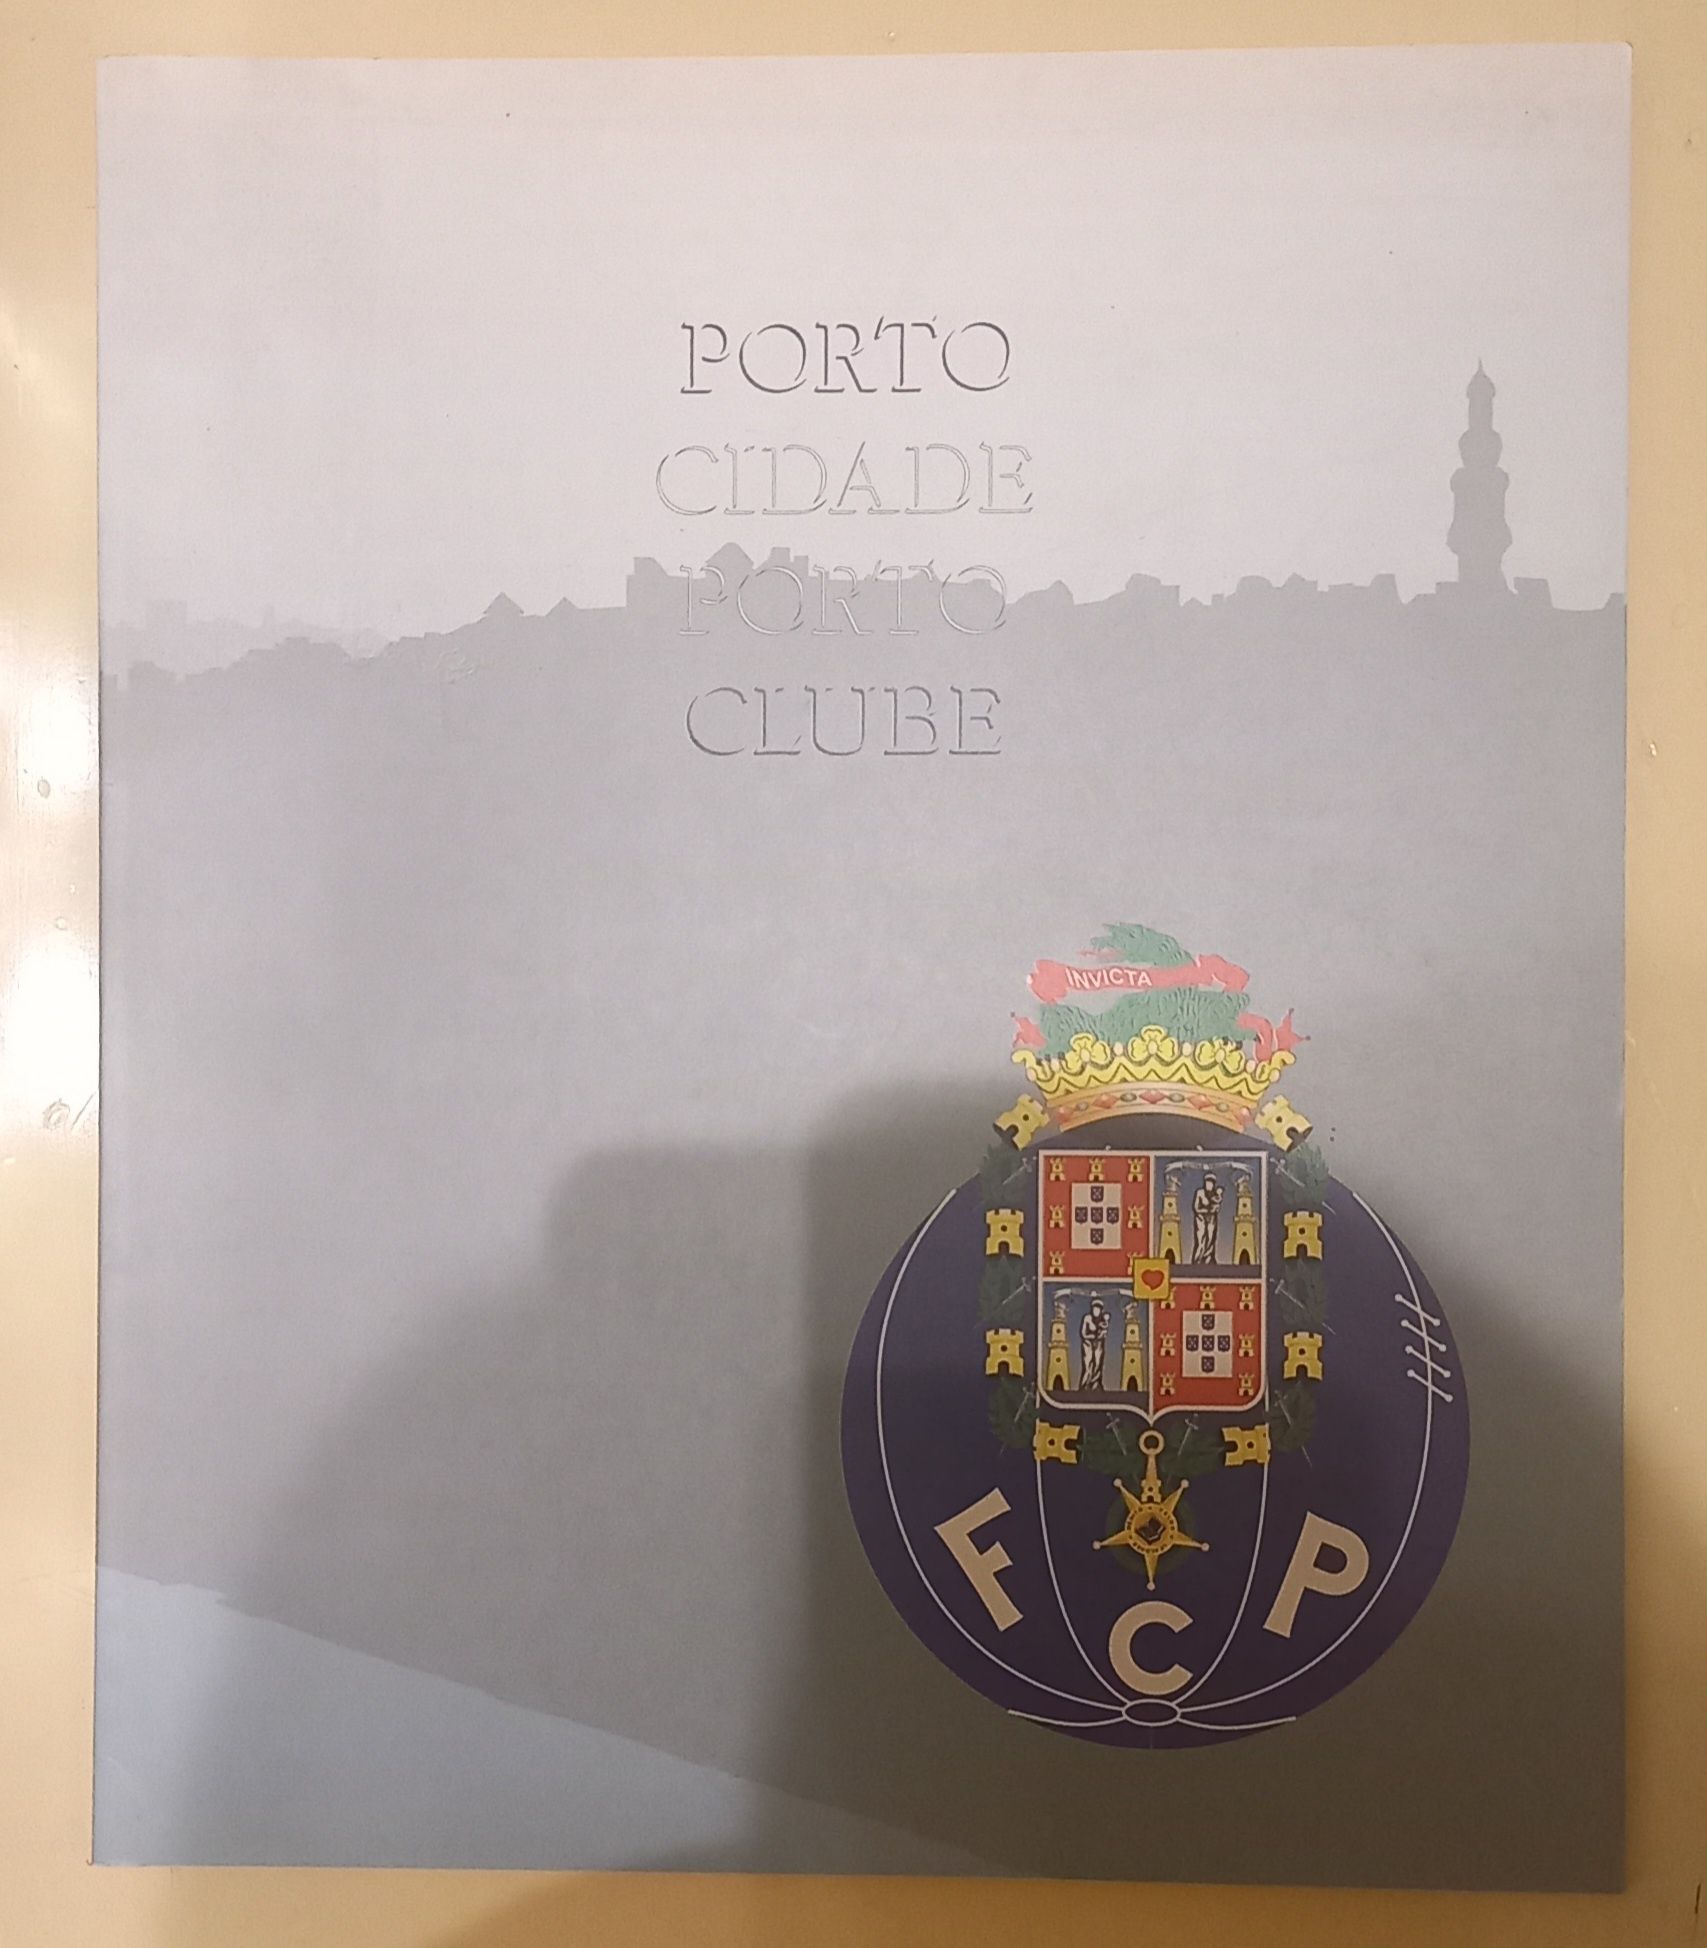 Livros do Futebol Clube do Porto 3 diferentes. PORTES GRÁTIS.